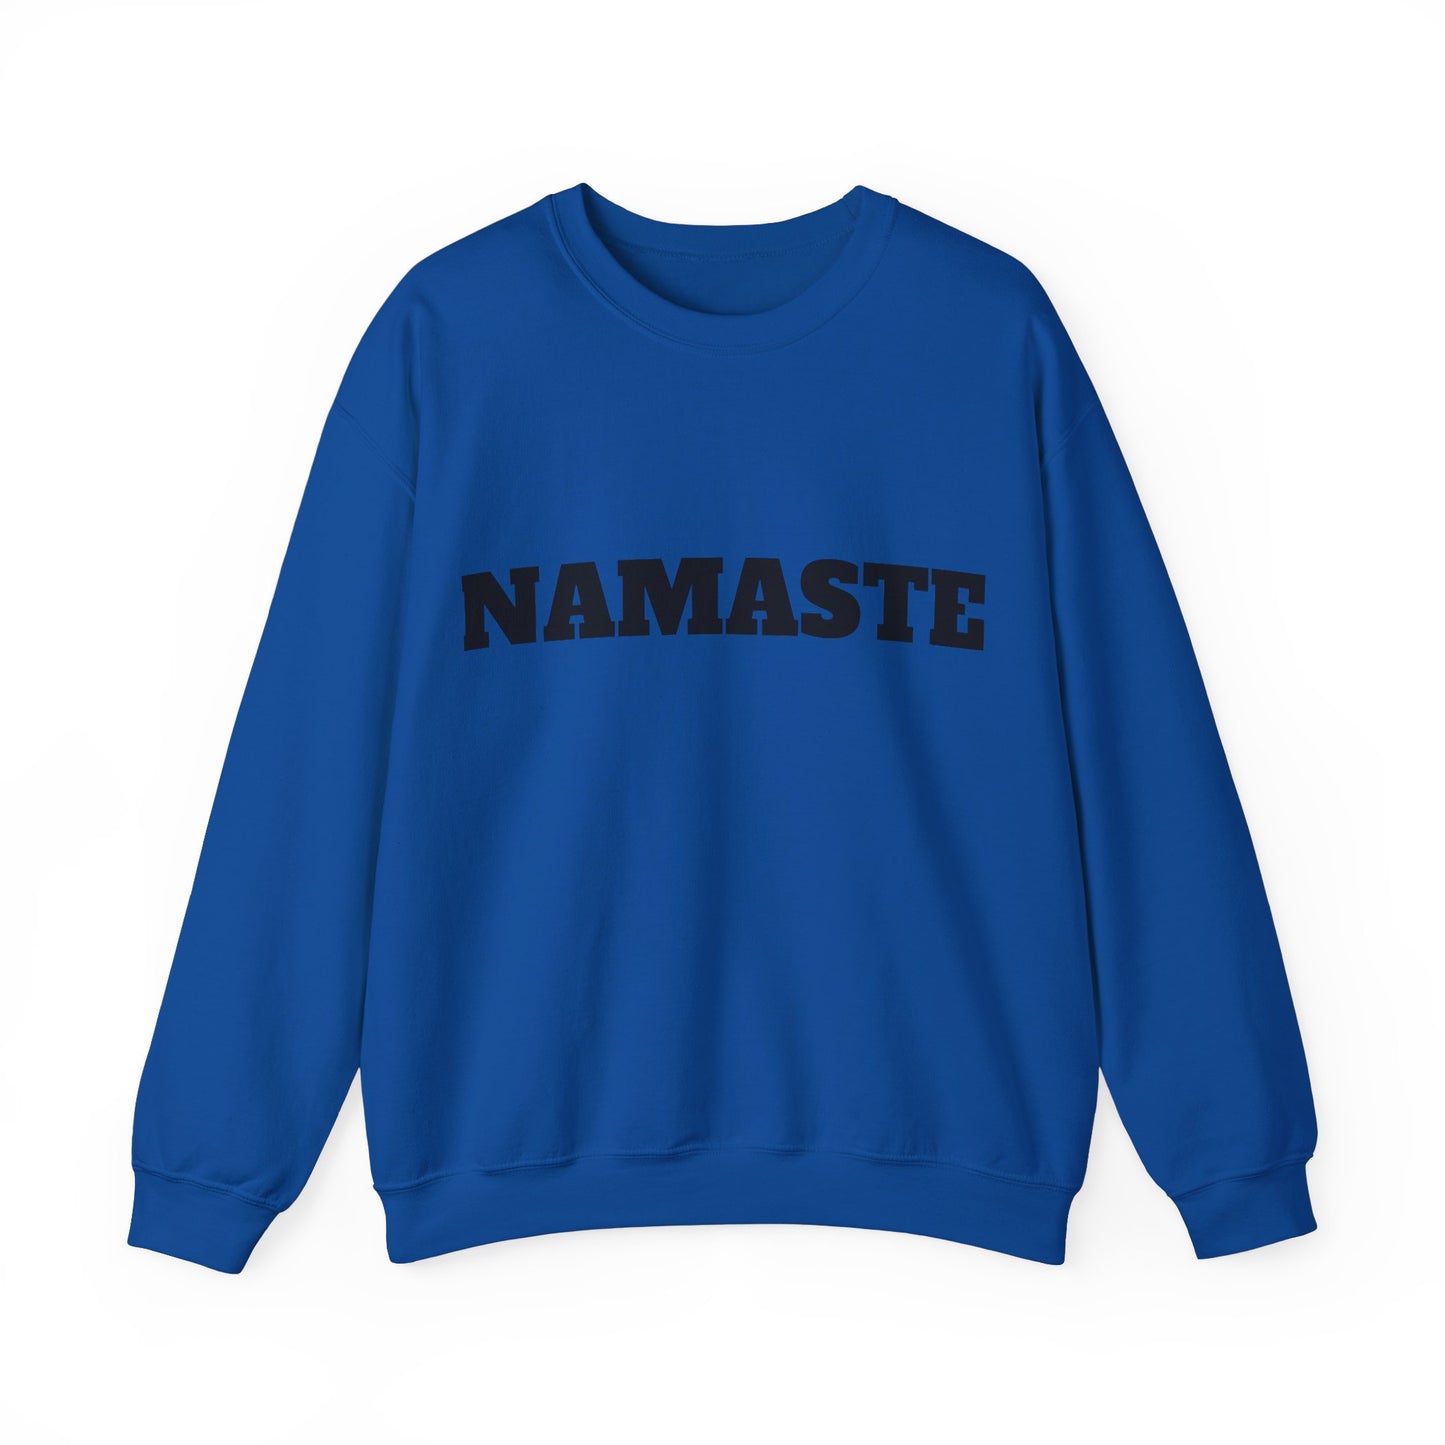 Namaste Crewneck Sweatshirt